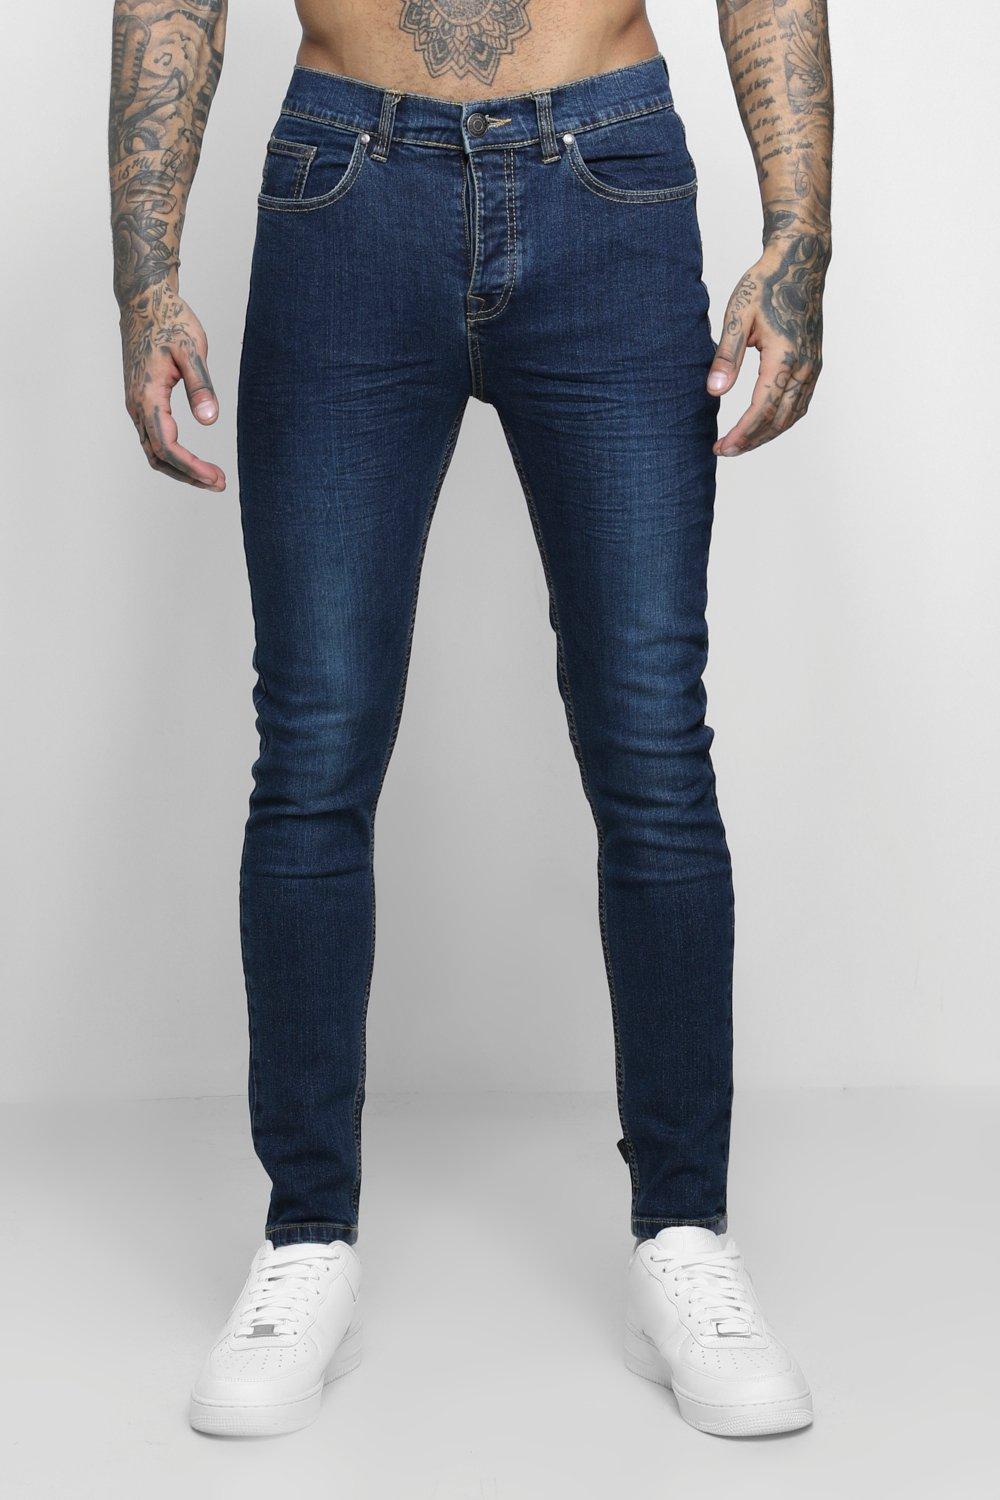 jeans indigo